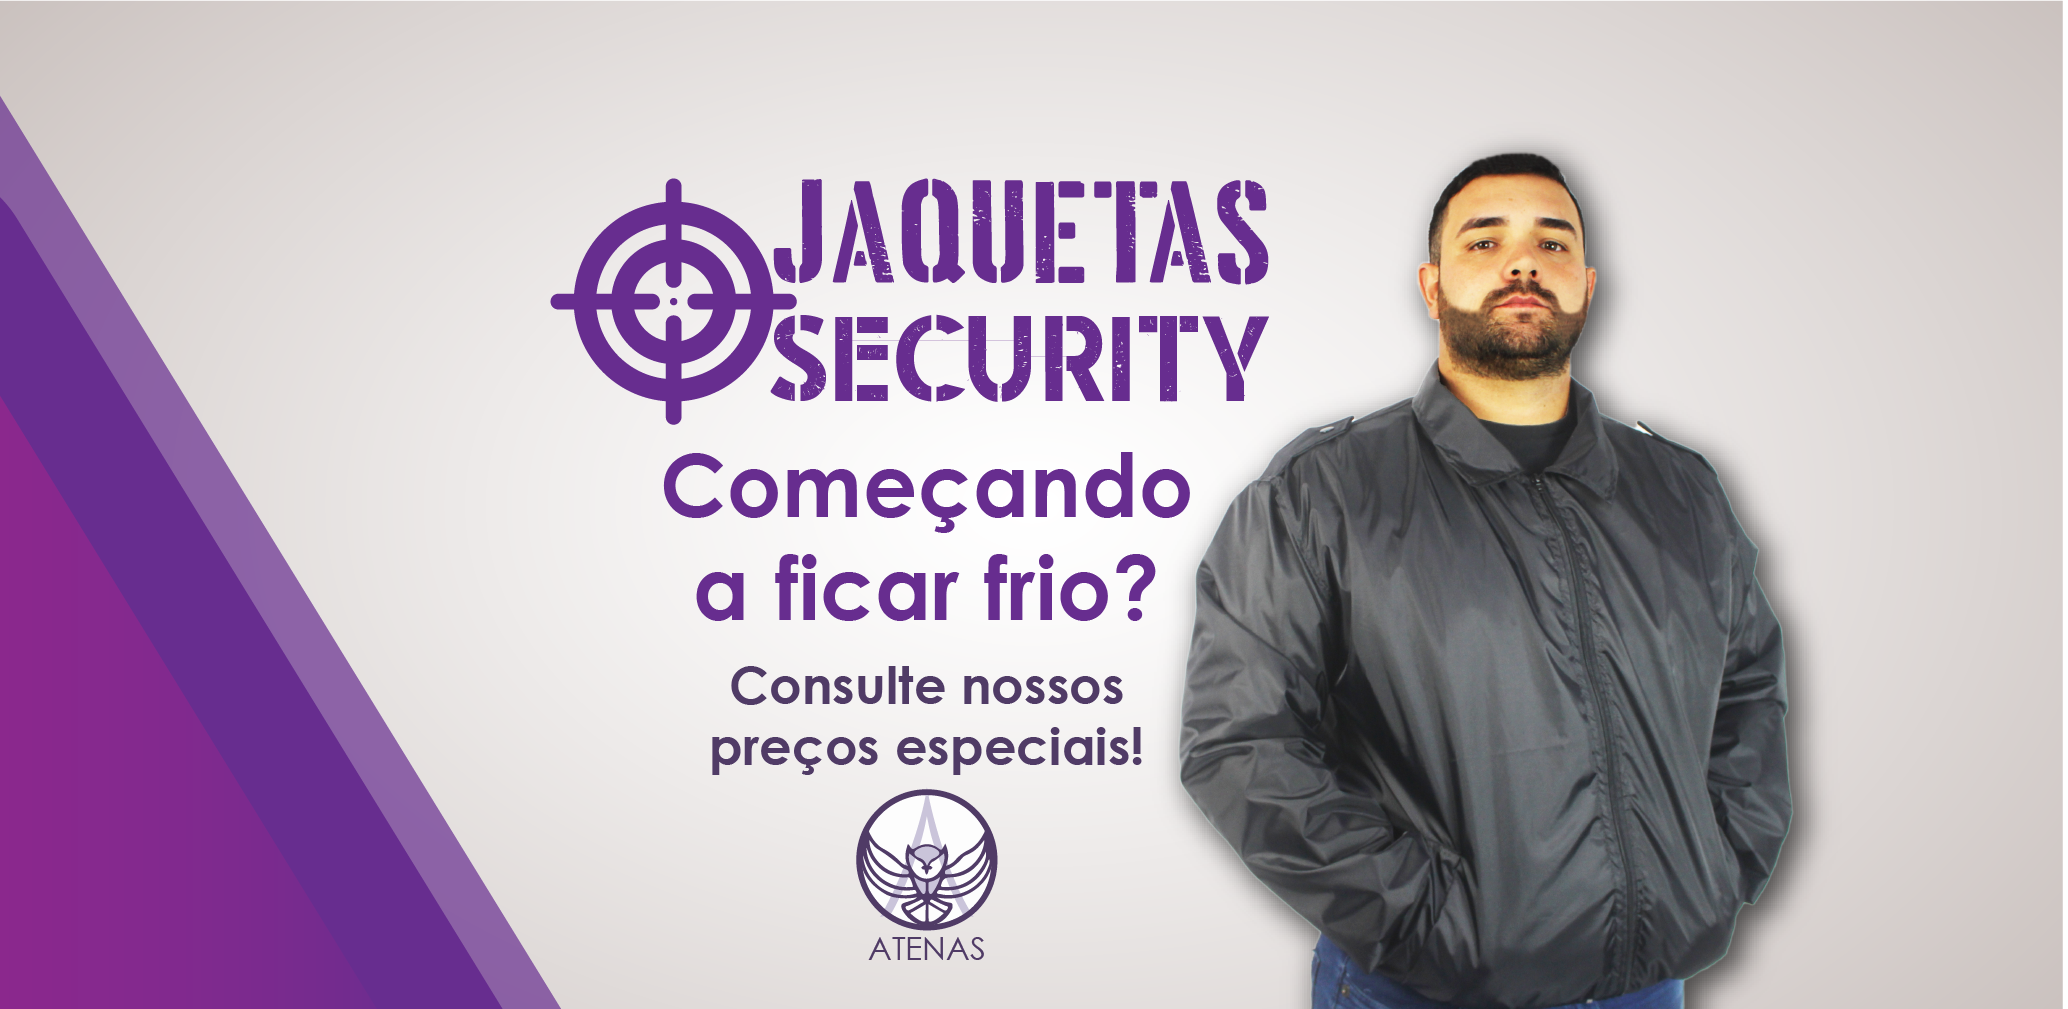 Jaquetas Security